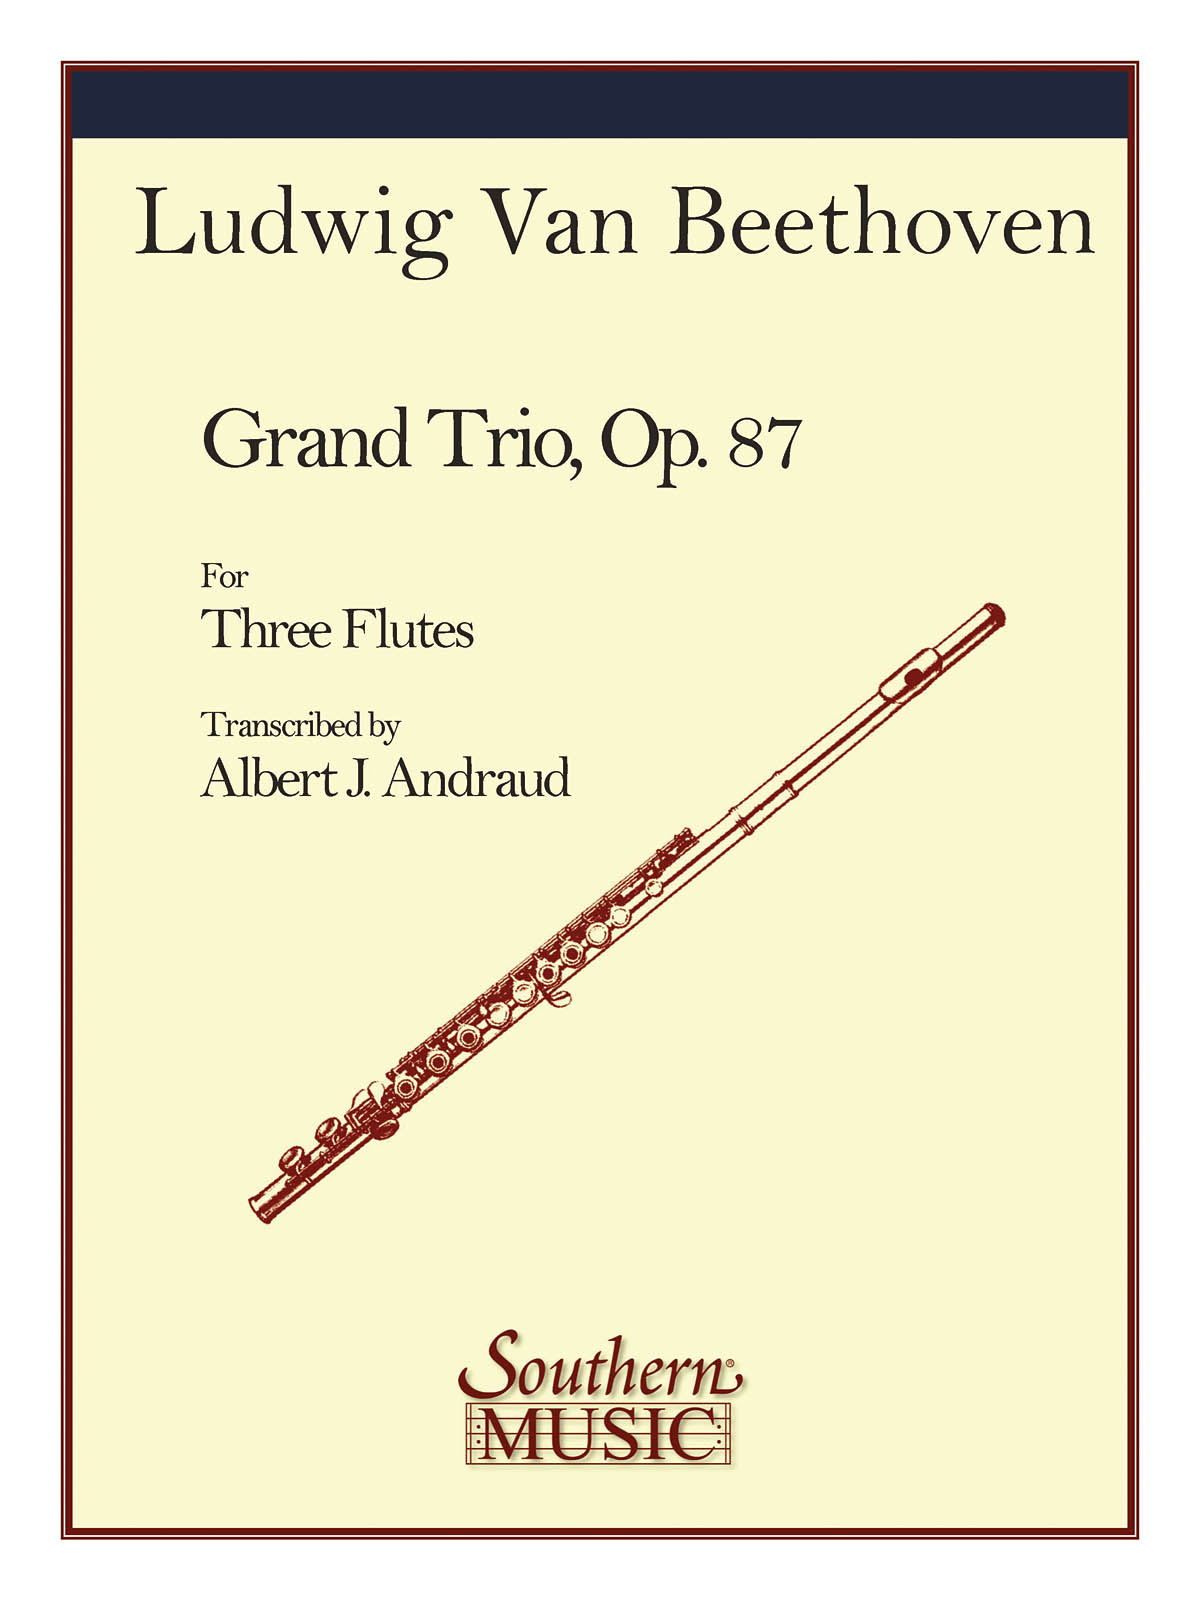 Beethoven, Ludwig van: Grand Trio, Op 87